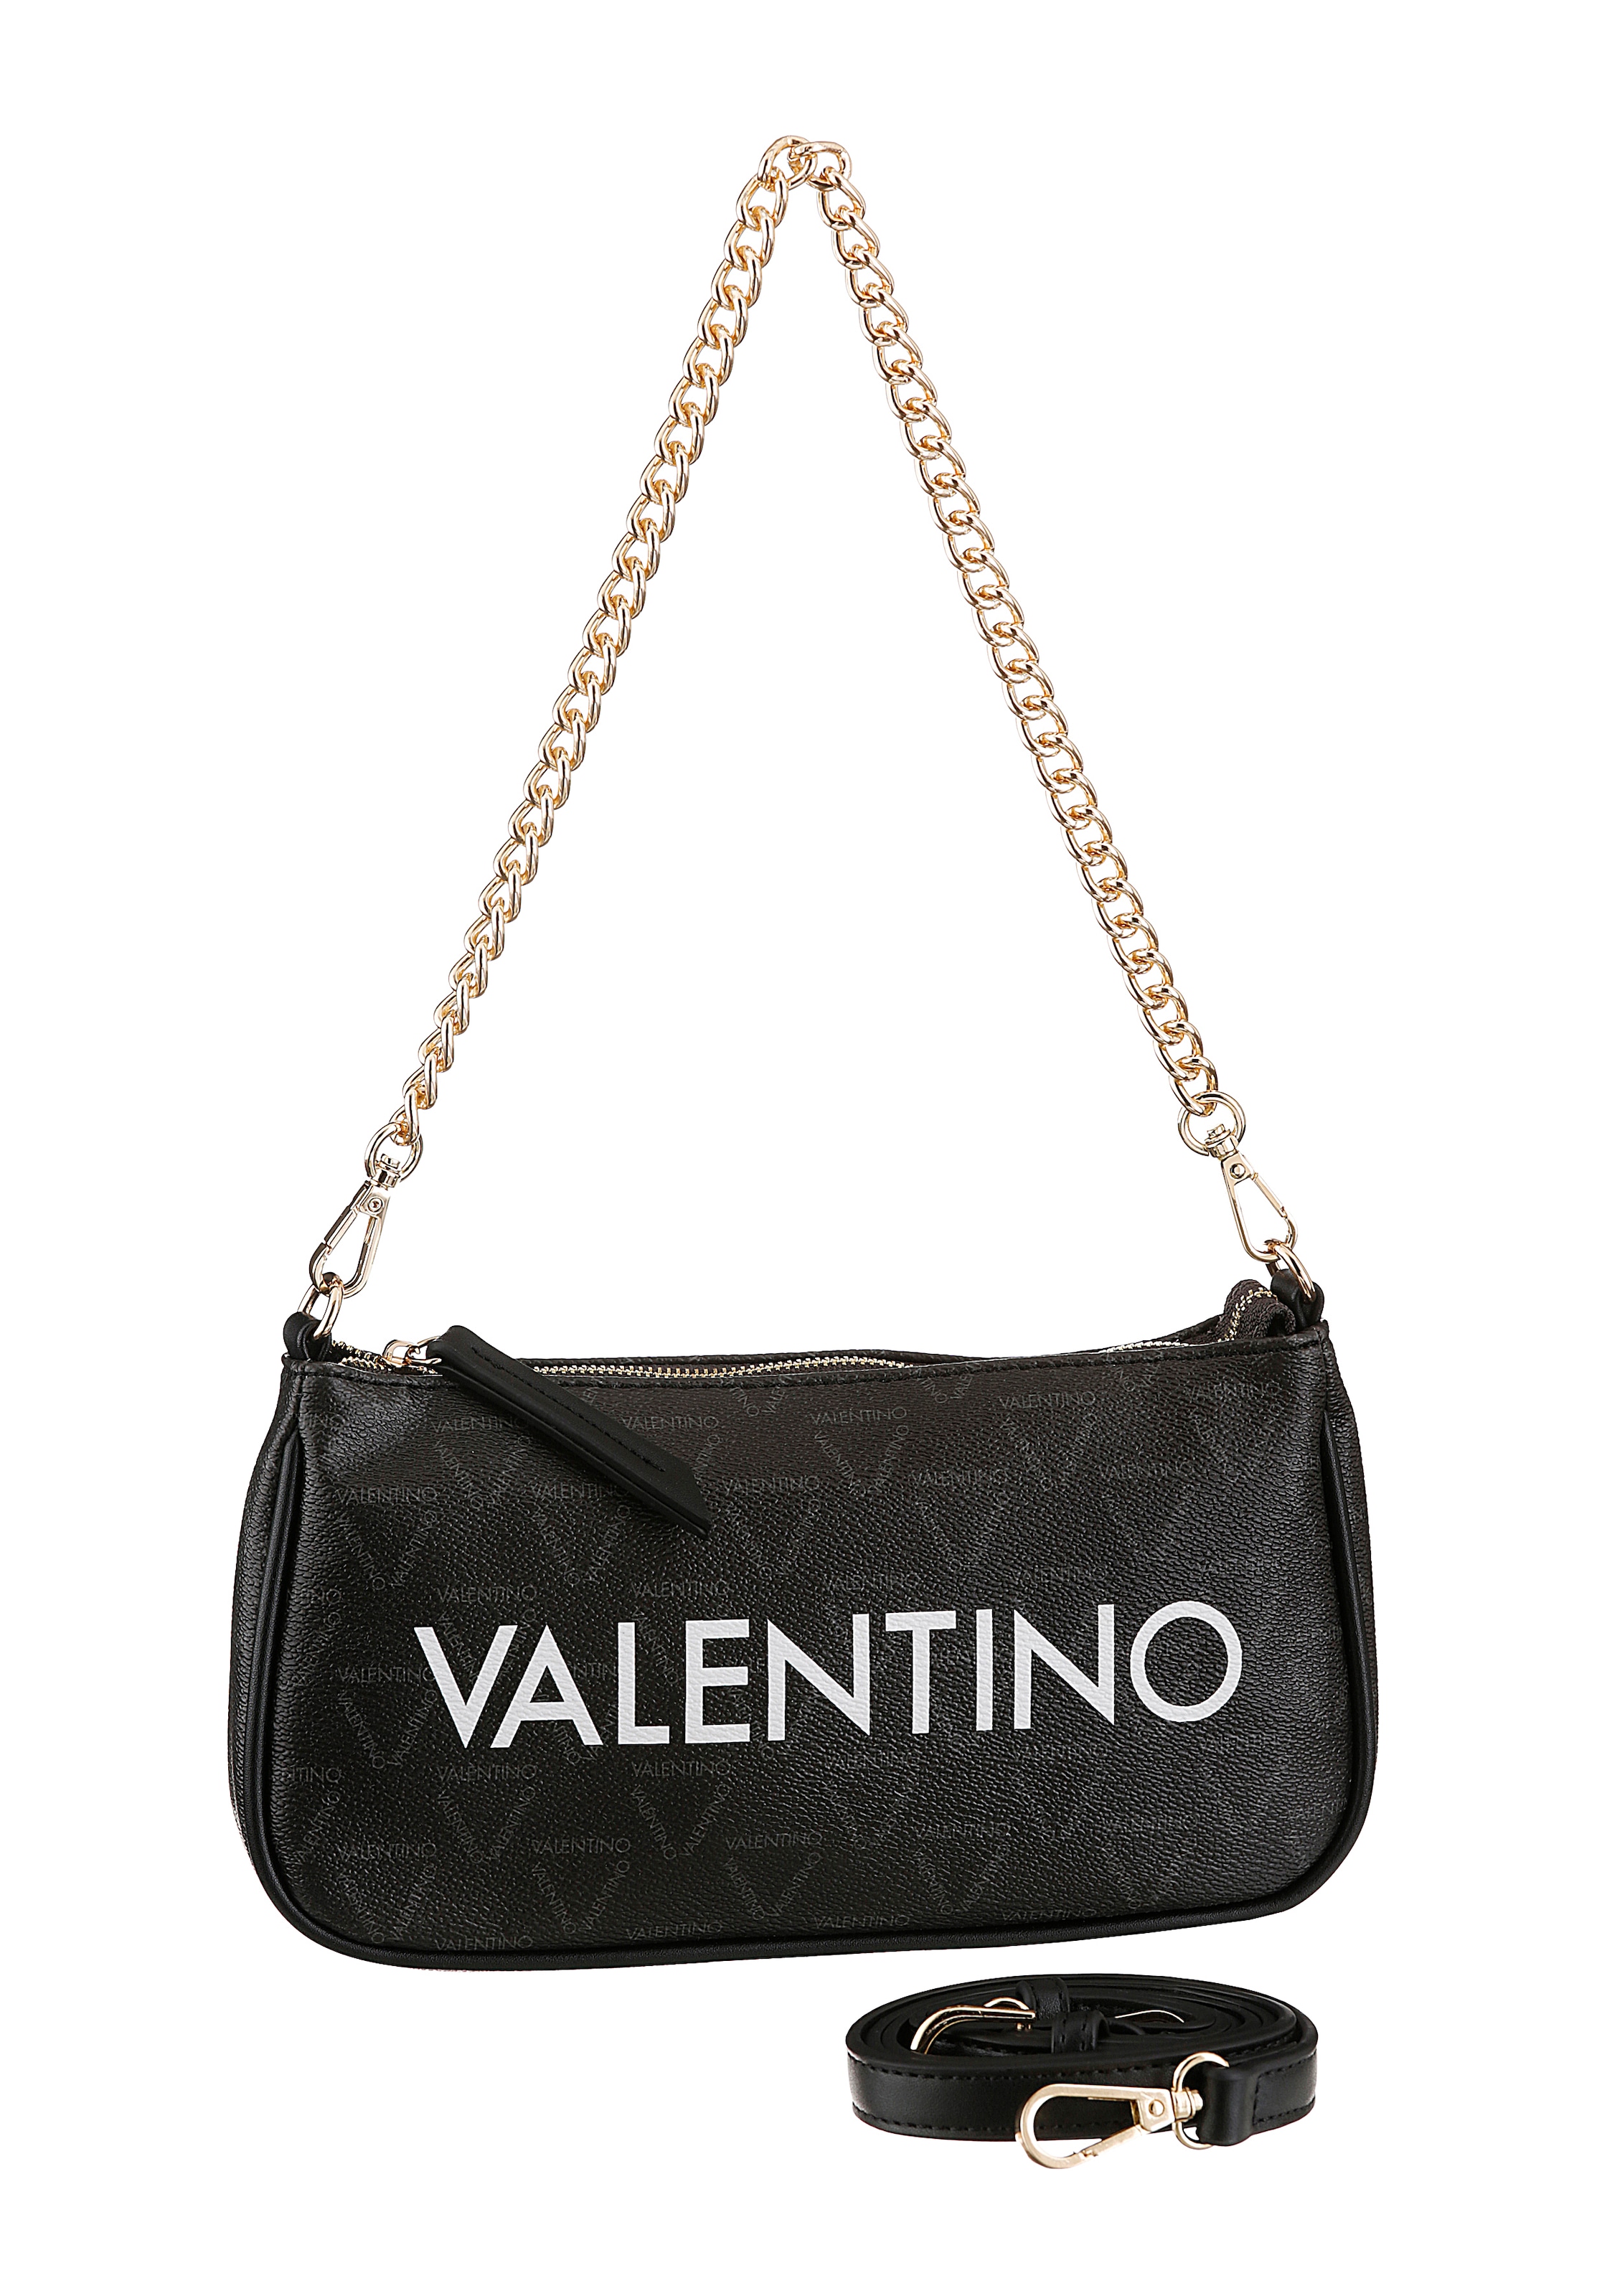 VALENTINO BAGS trendigem Label-Druck auffäligem »Liuto«, und mit Umhängetasche Kettenhenkel